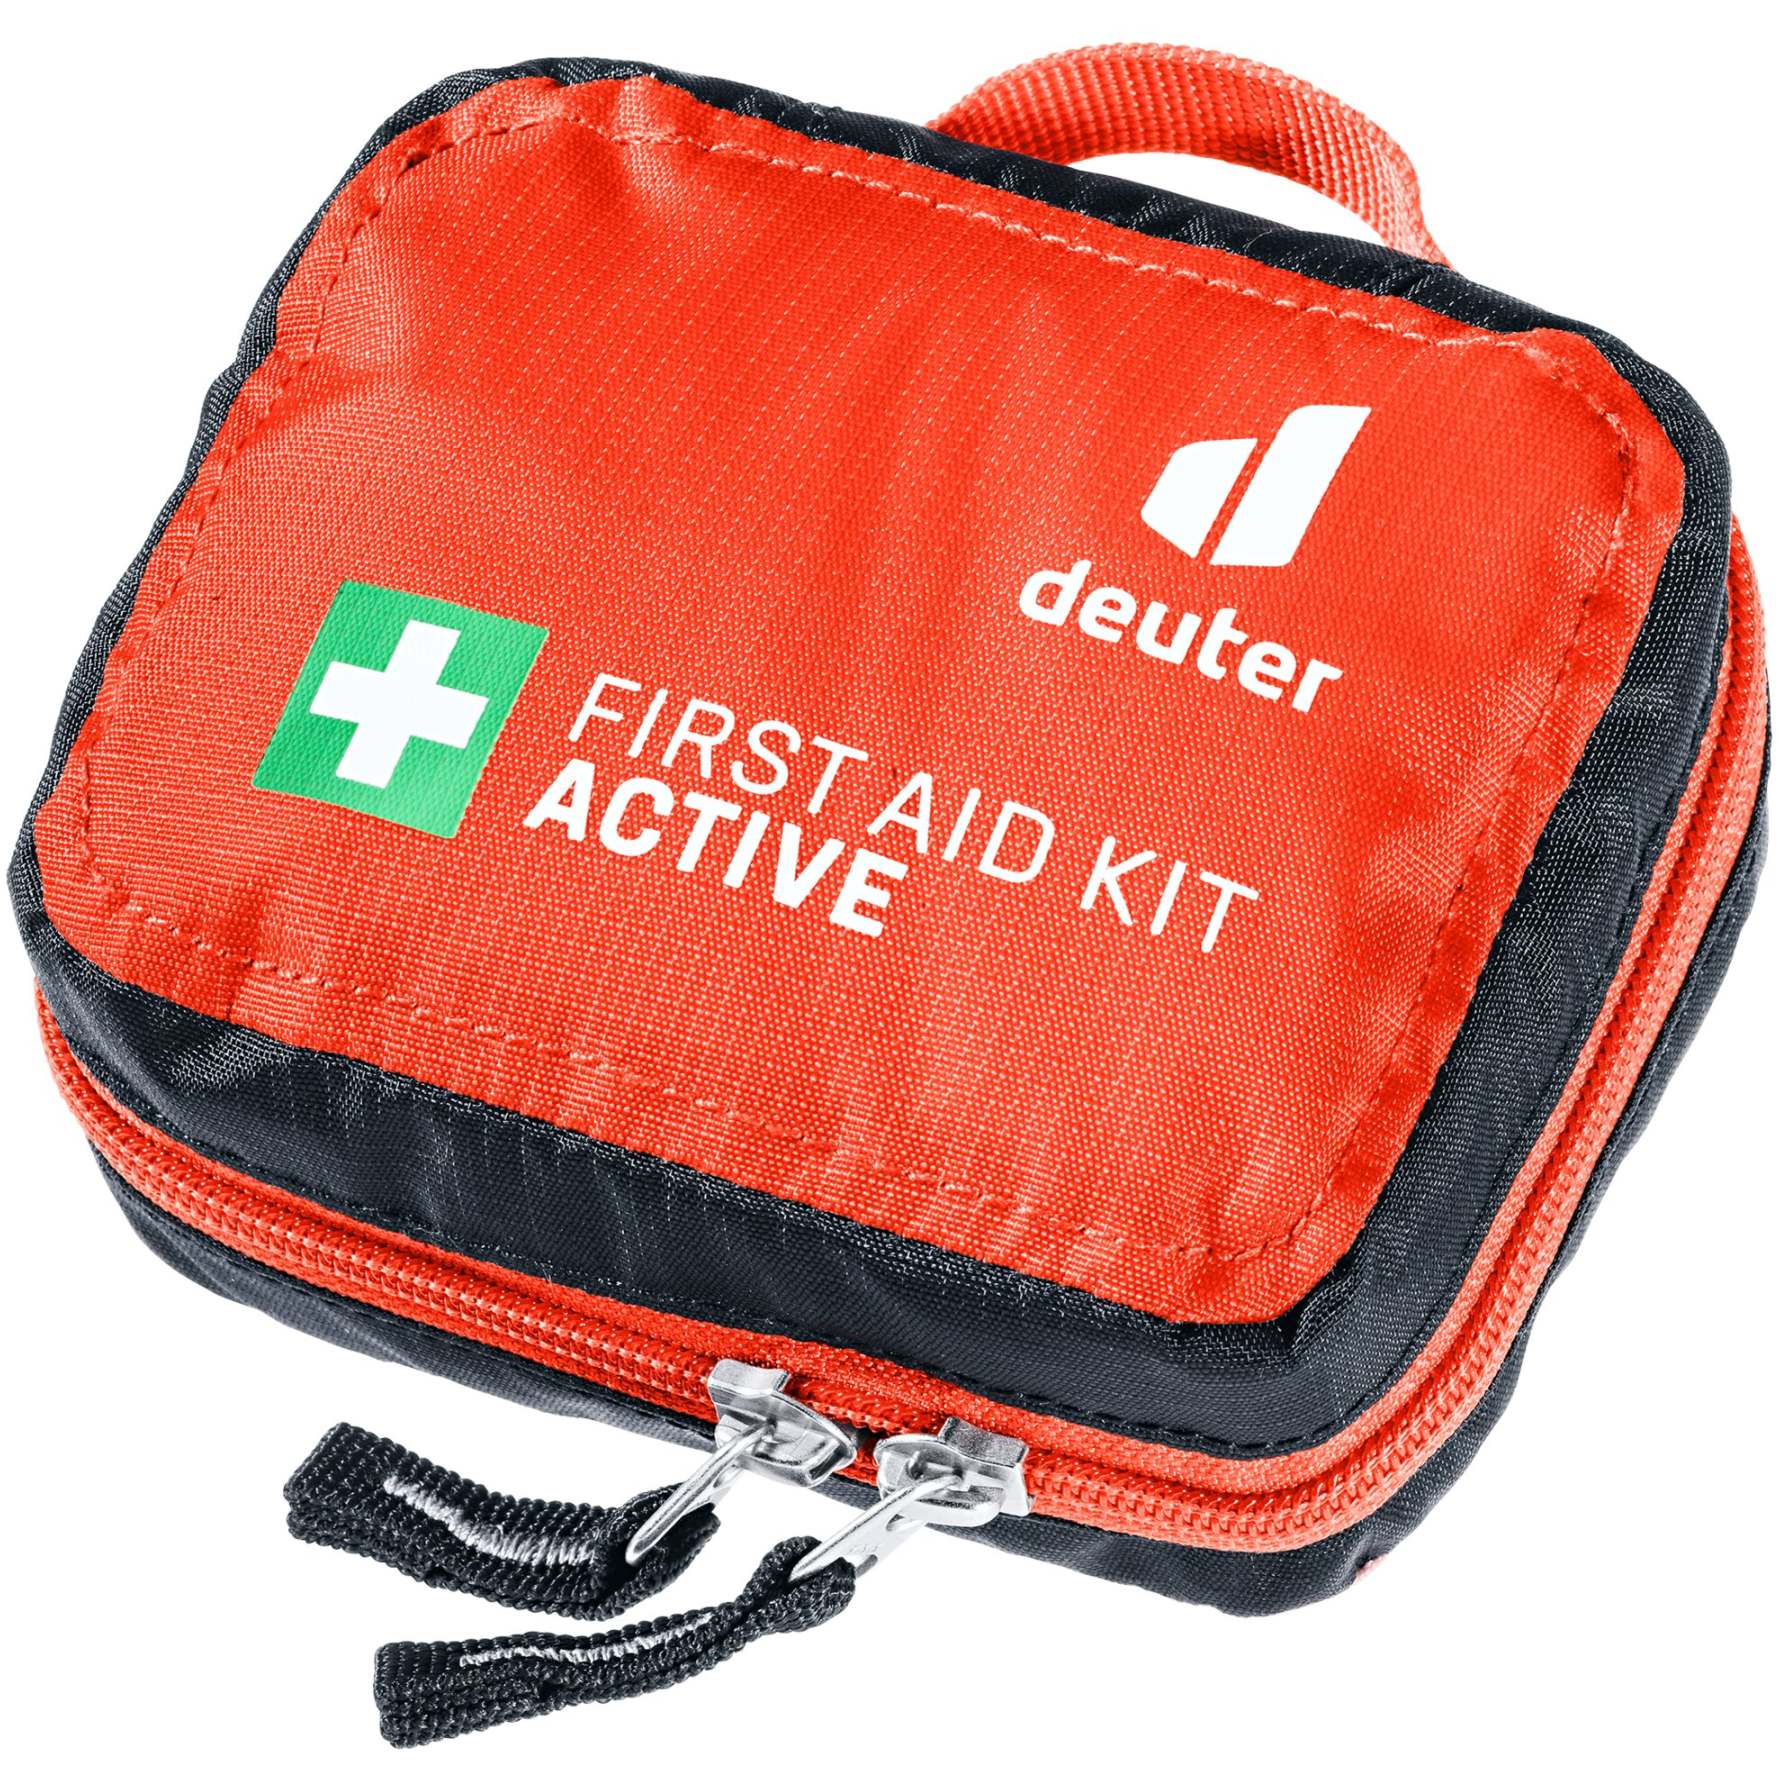 Bild von Deuter First Aid Kit Active Erste-Hilfe-Set - recyceltes Material / papaya